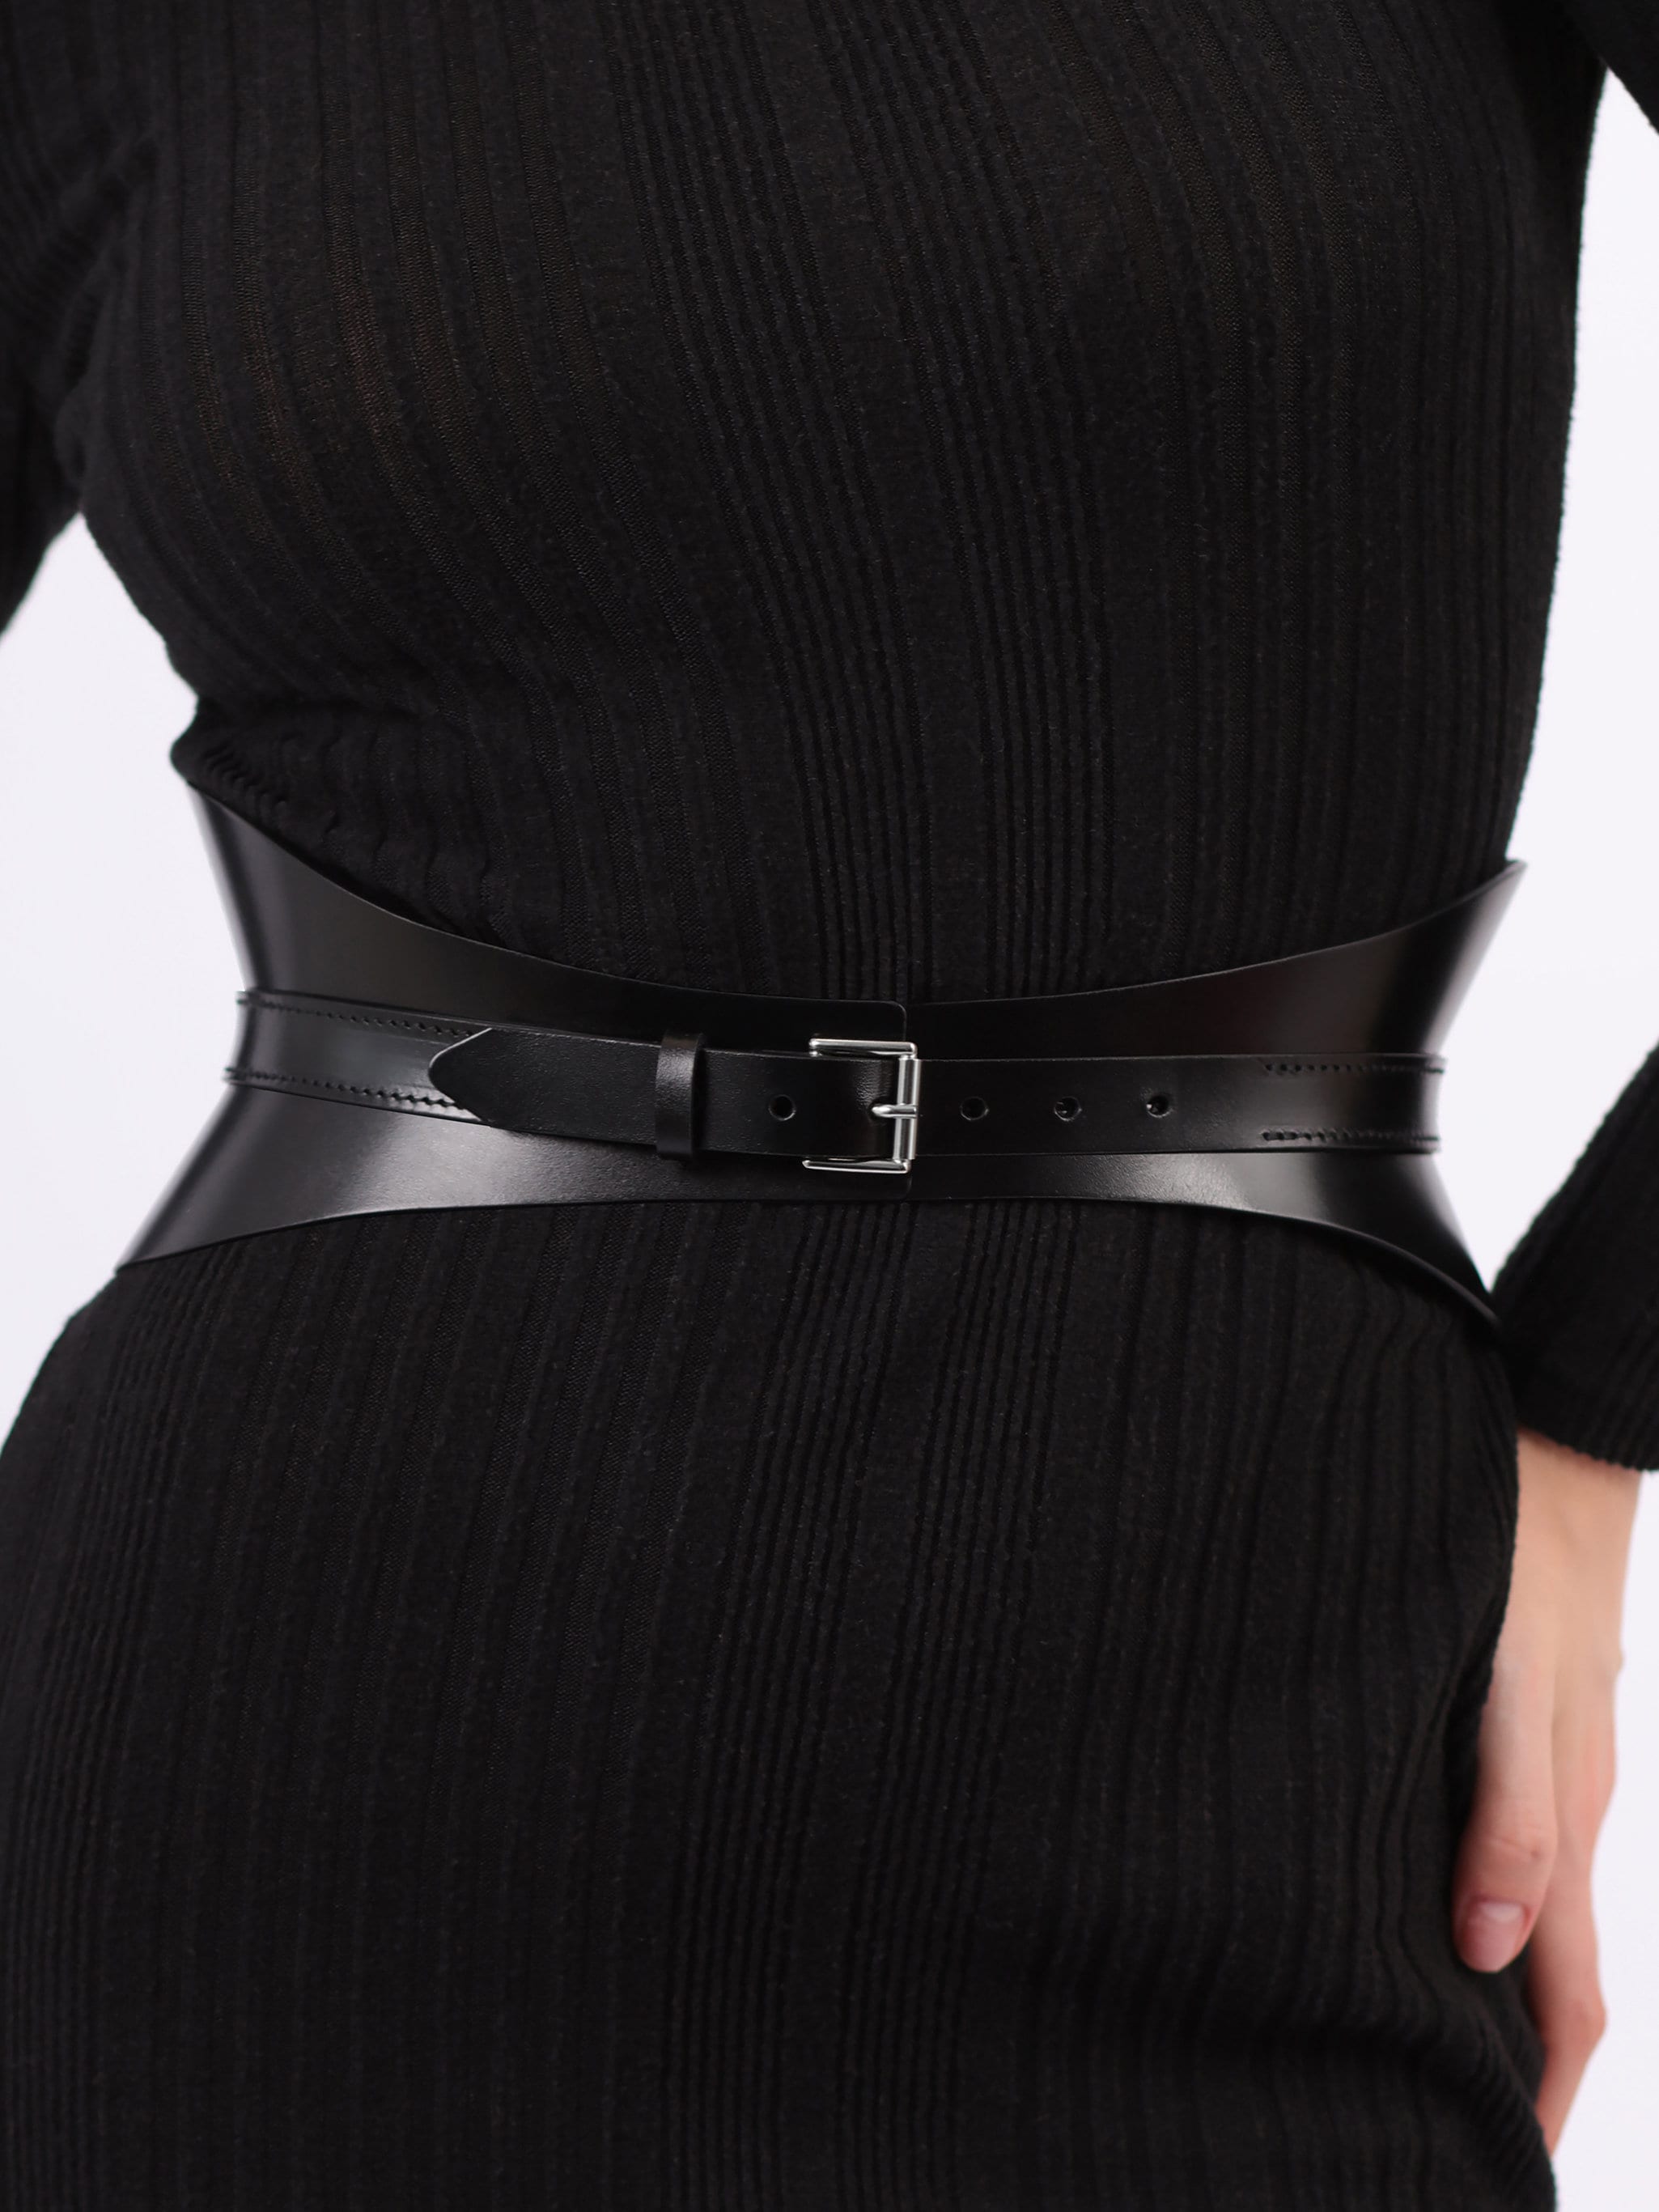 Buy ARTLABEL Women's Corset Belt - Vintage-Inspired Waist Cincher (Black)  at